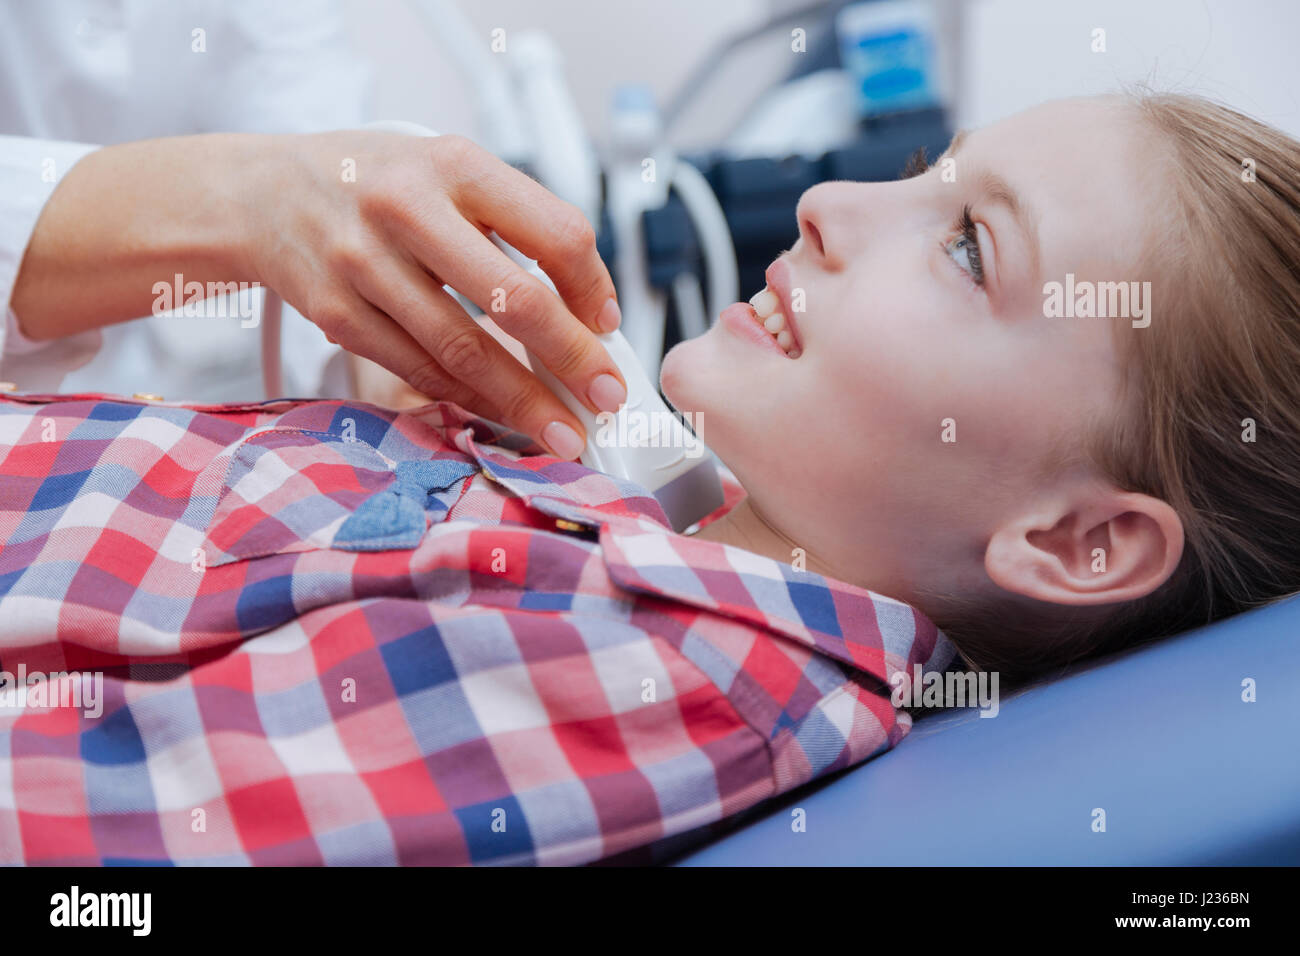 Glückliches Mädchen Immer Ultraschall Hals Scannen In Der Klinik Stockfotografie Alamy 